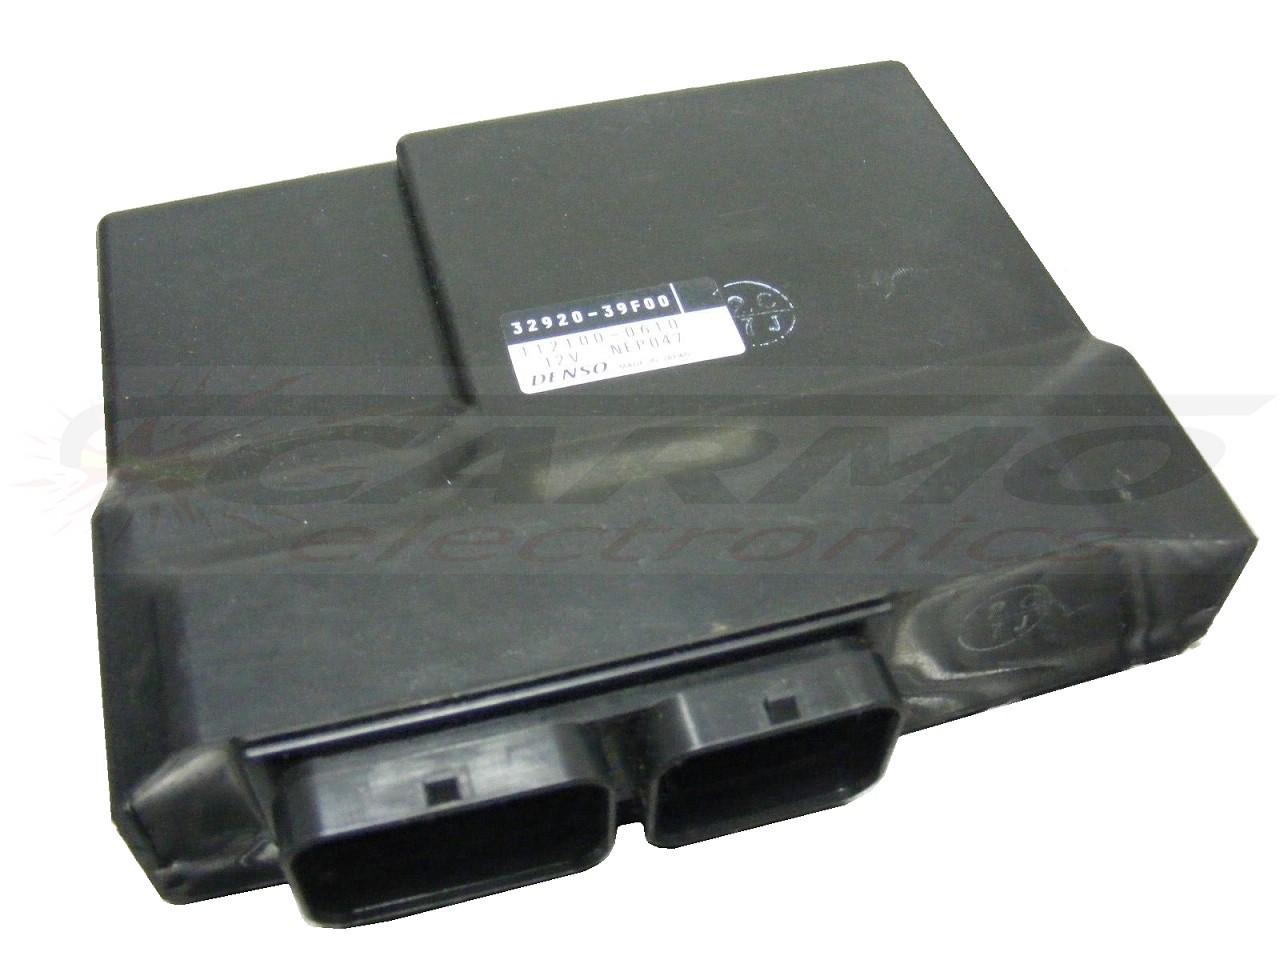 GSXR600 GSX-R 600 ECU ECM CDI Einheit Steuergerät Rechner (32920-39F00 -39F20 -39F30)